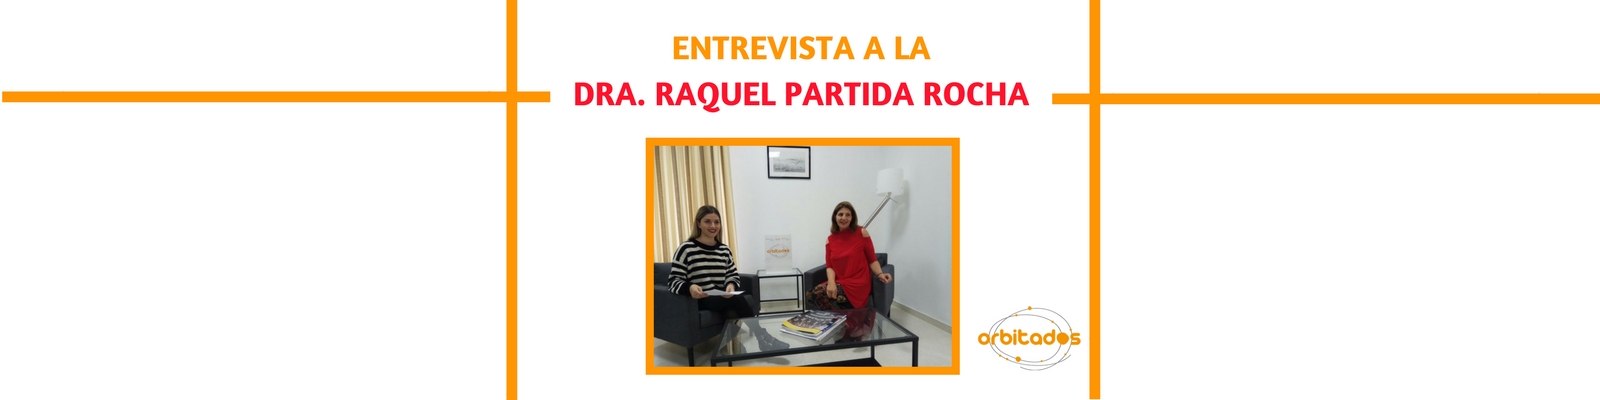 Entrevista a la Dra. Raquel Partida Rocha sobre Relaciones Laborales en Méjico.